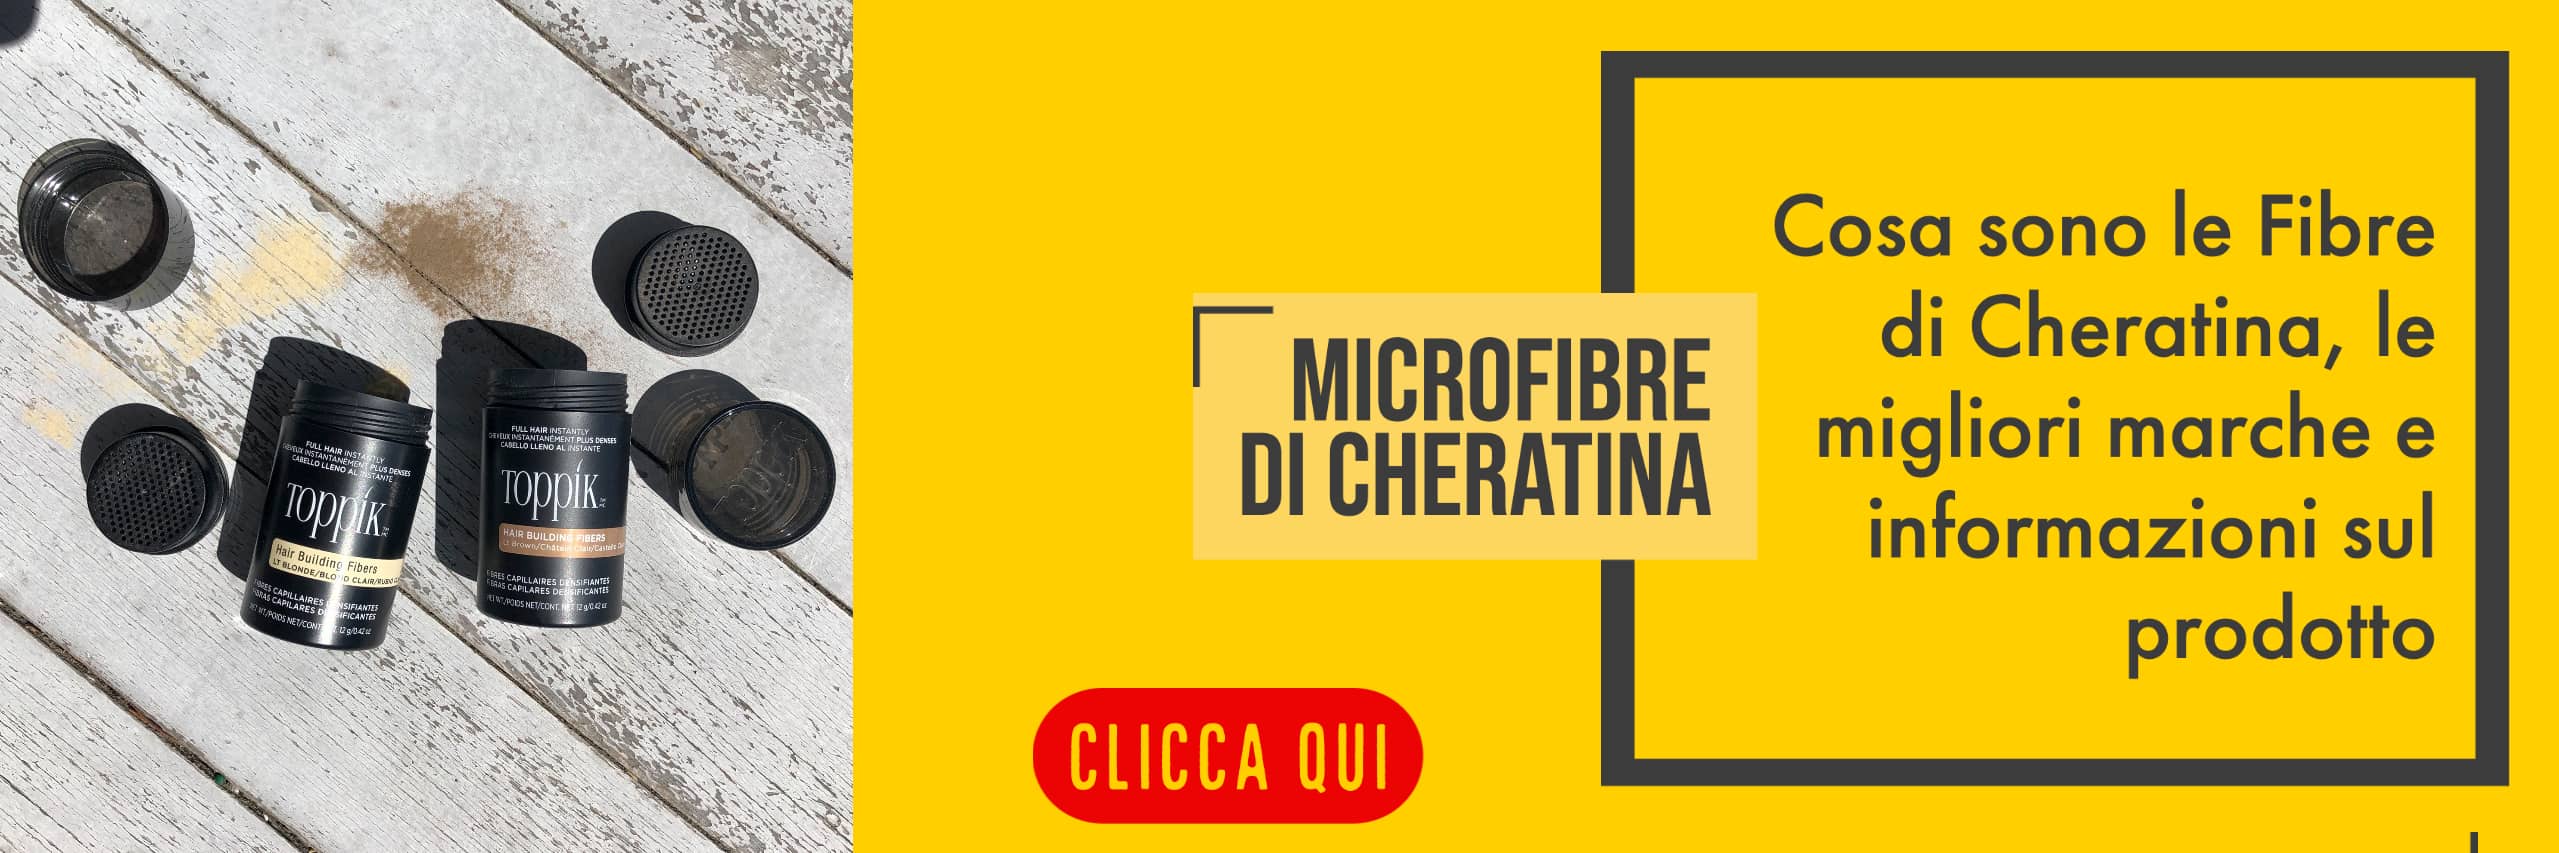 microfibre di cheratina